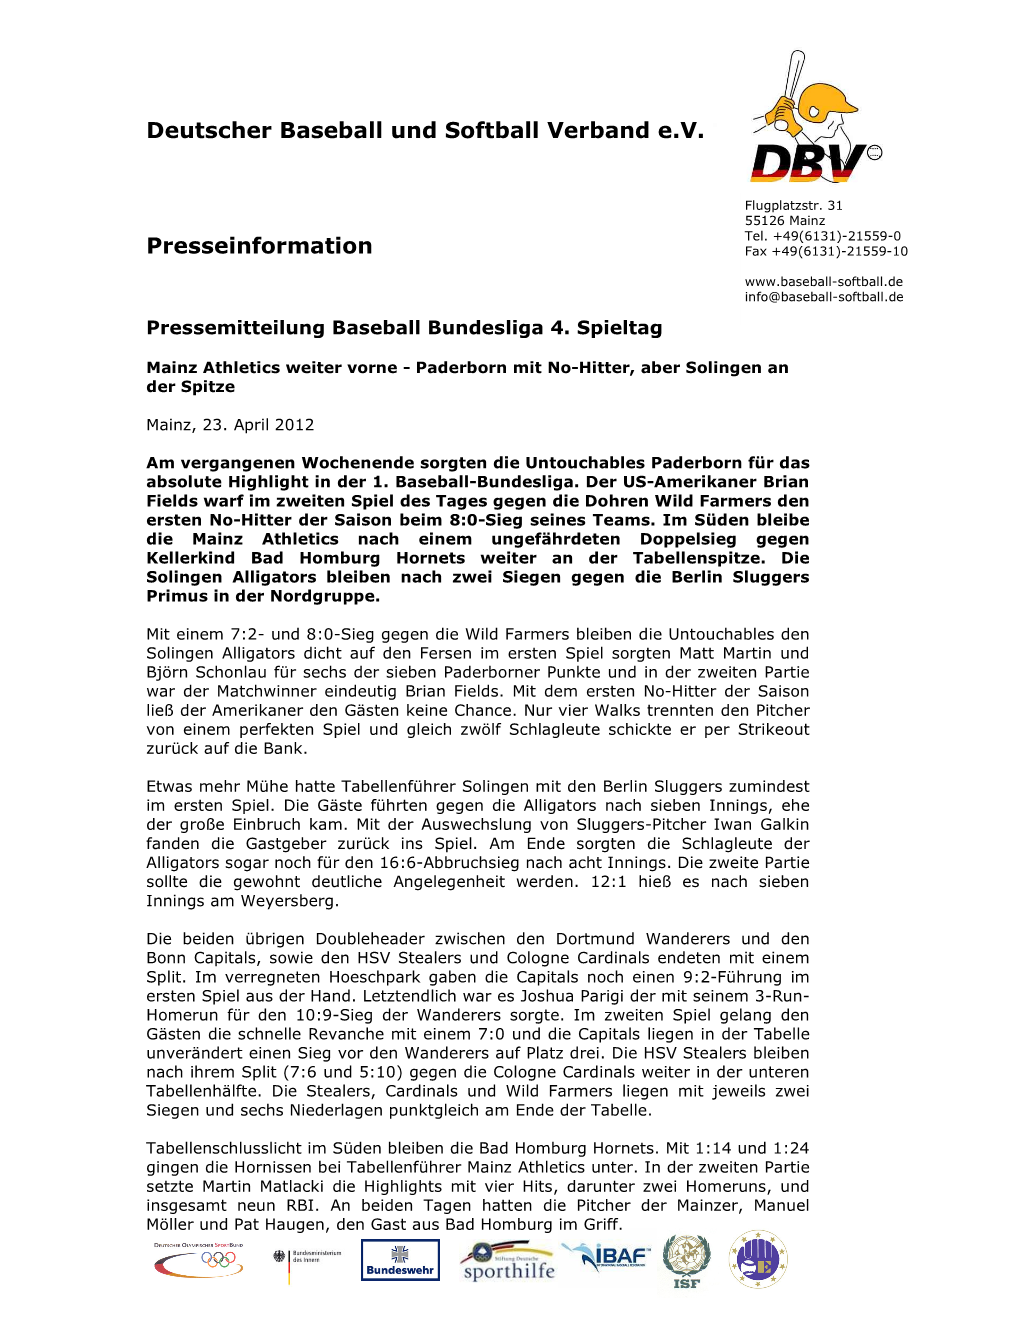 Deutscher Baseball Und Softball Verband E.V. Presseinformation